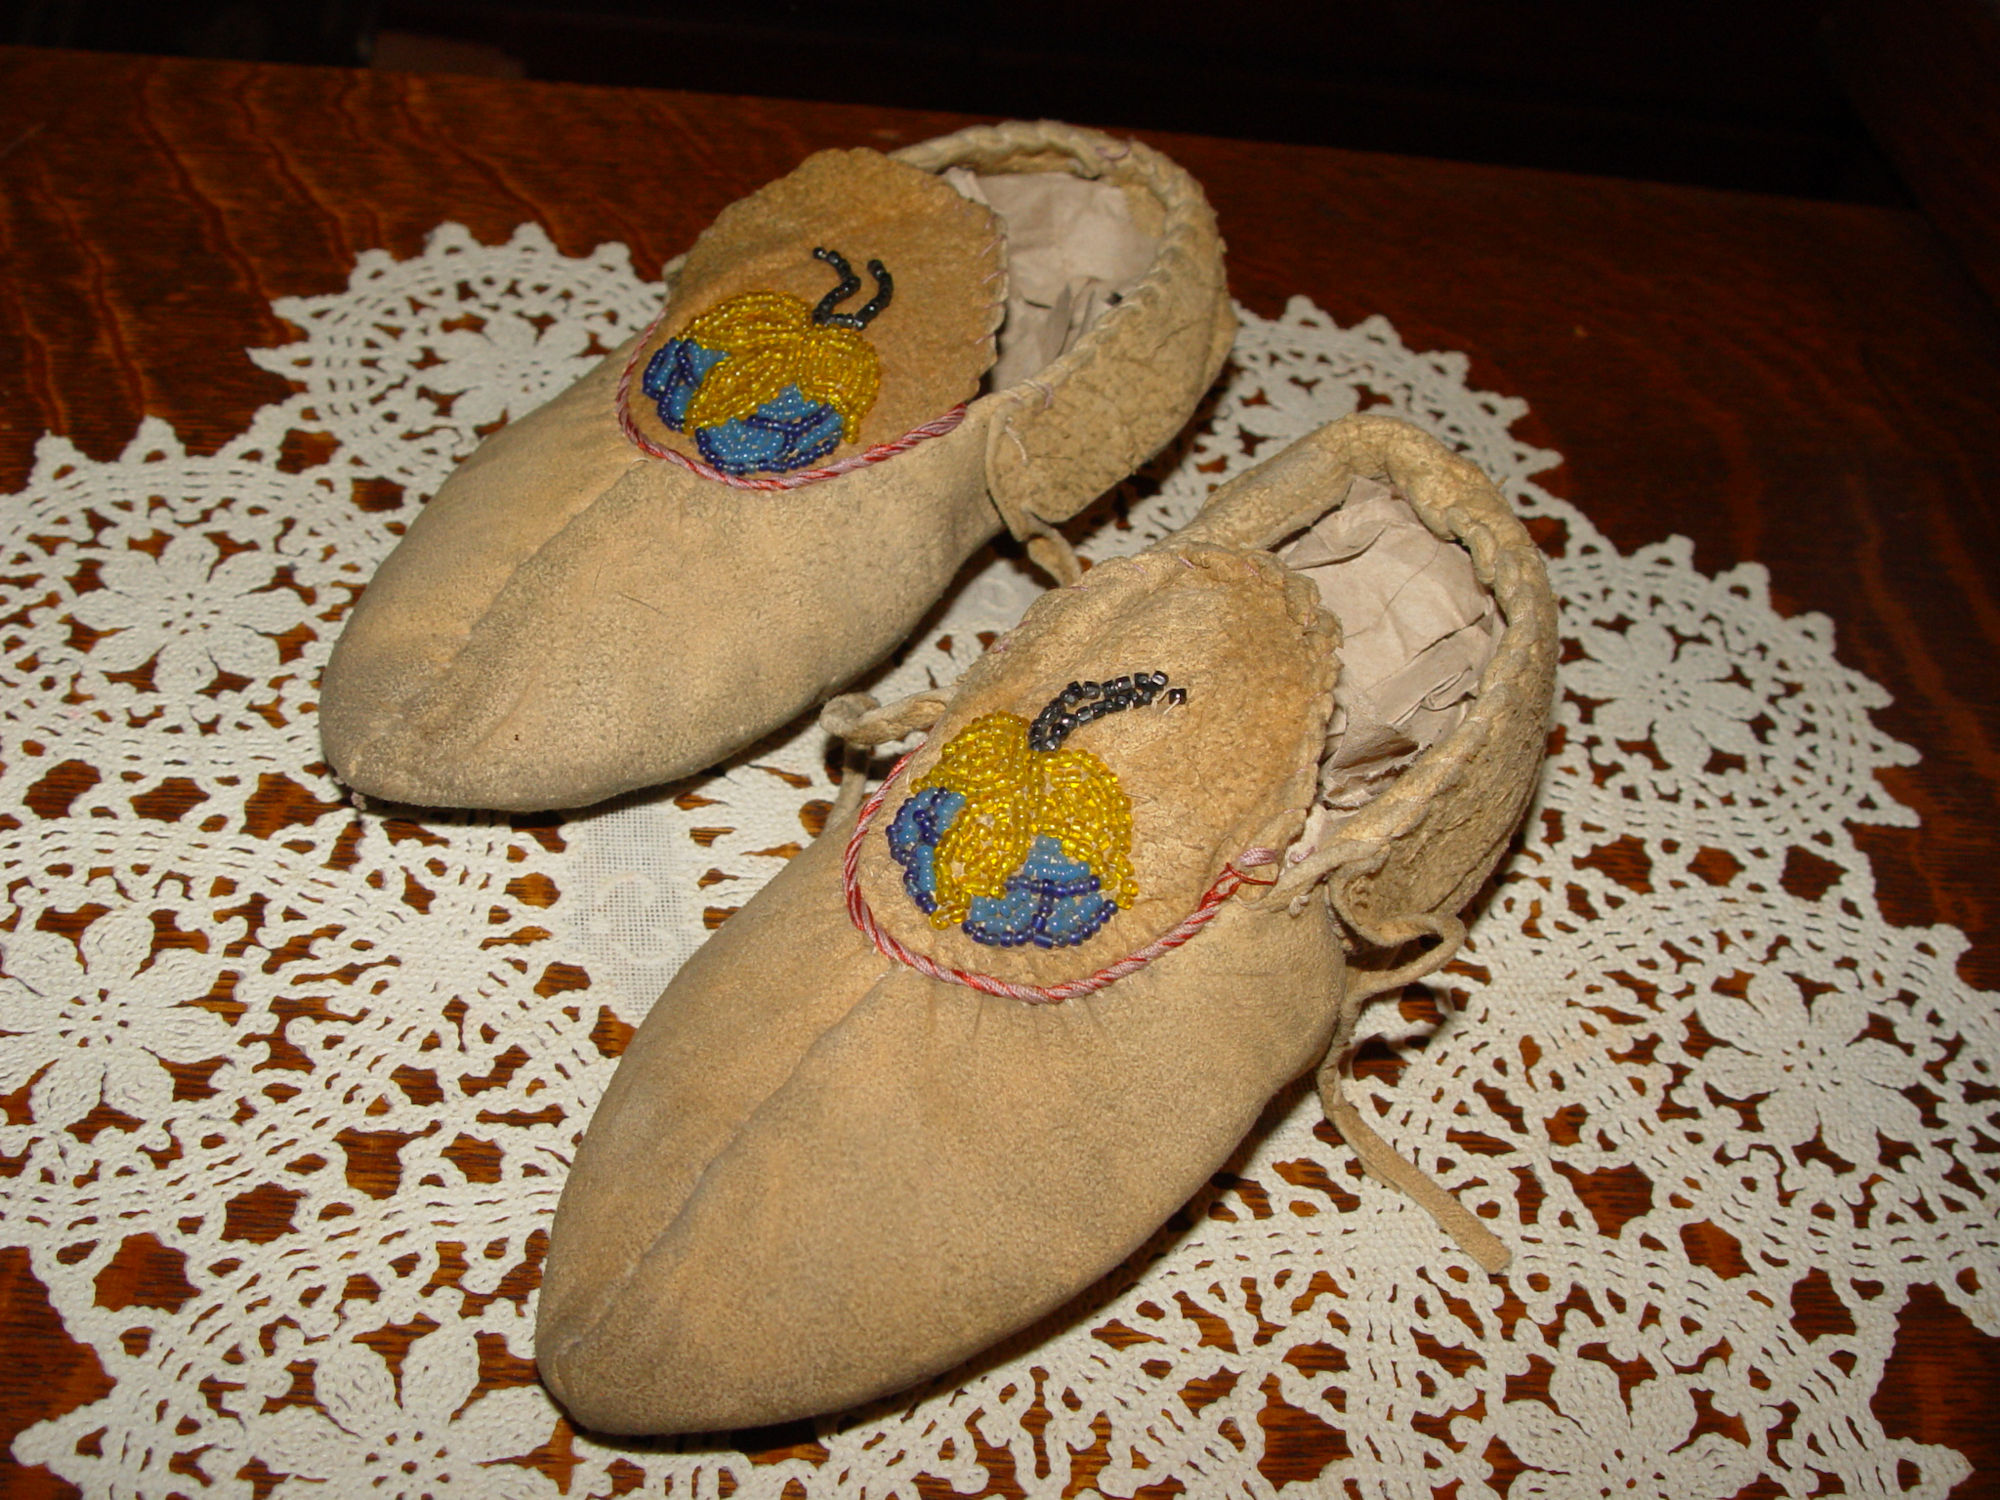 Chippewa child's moccasins
                                        - Midwest, Chippewa Native
                                        American